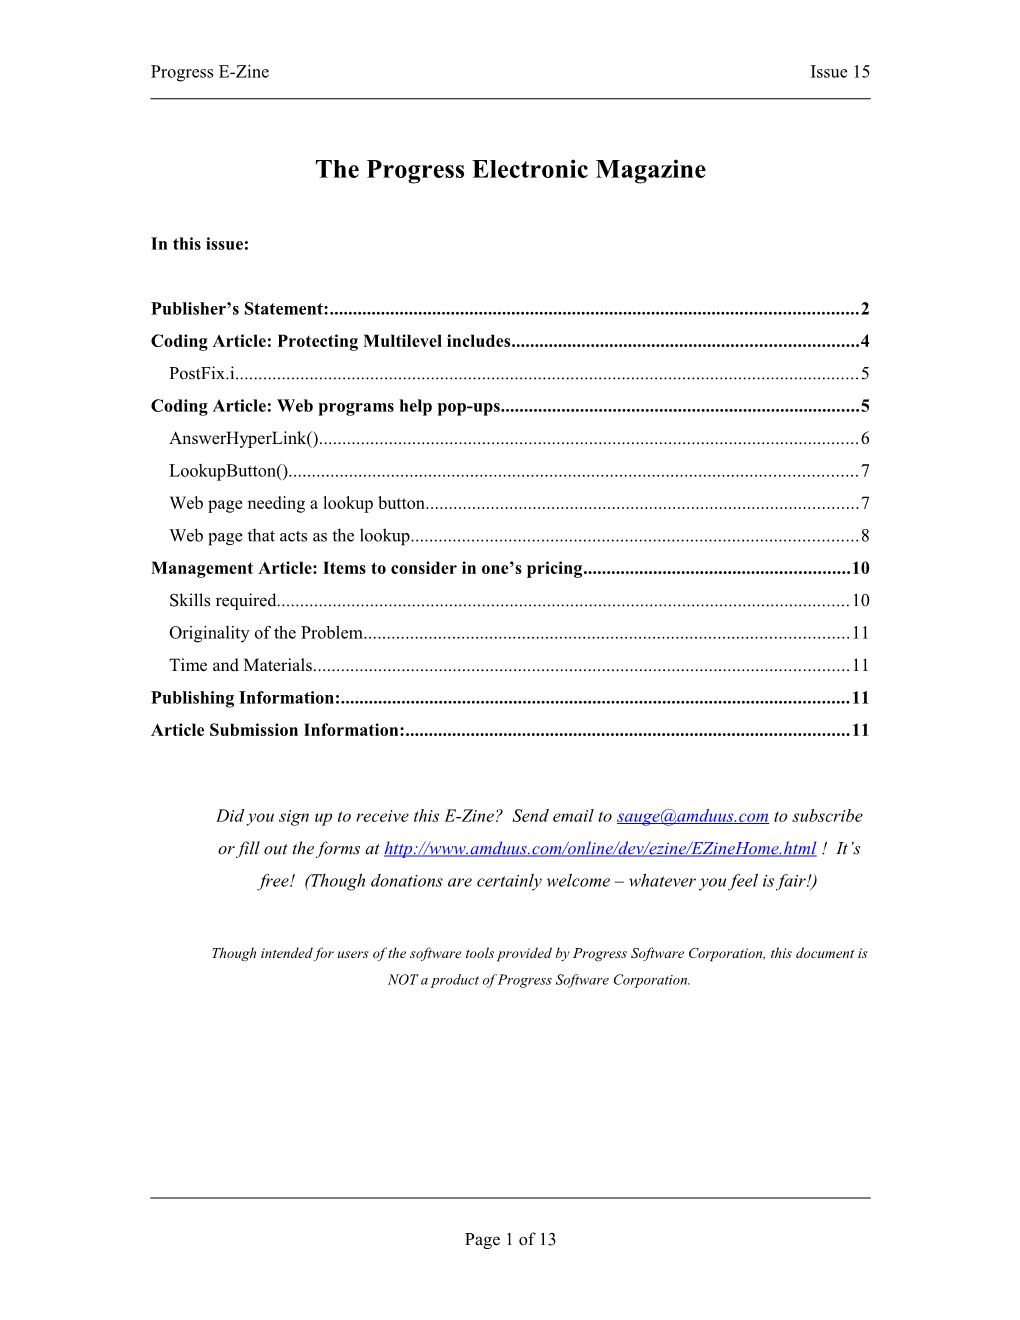 The Progress Electronic Magazine